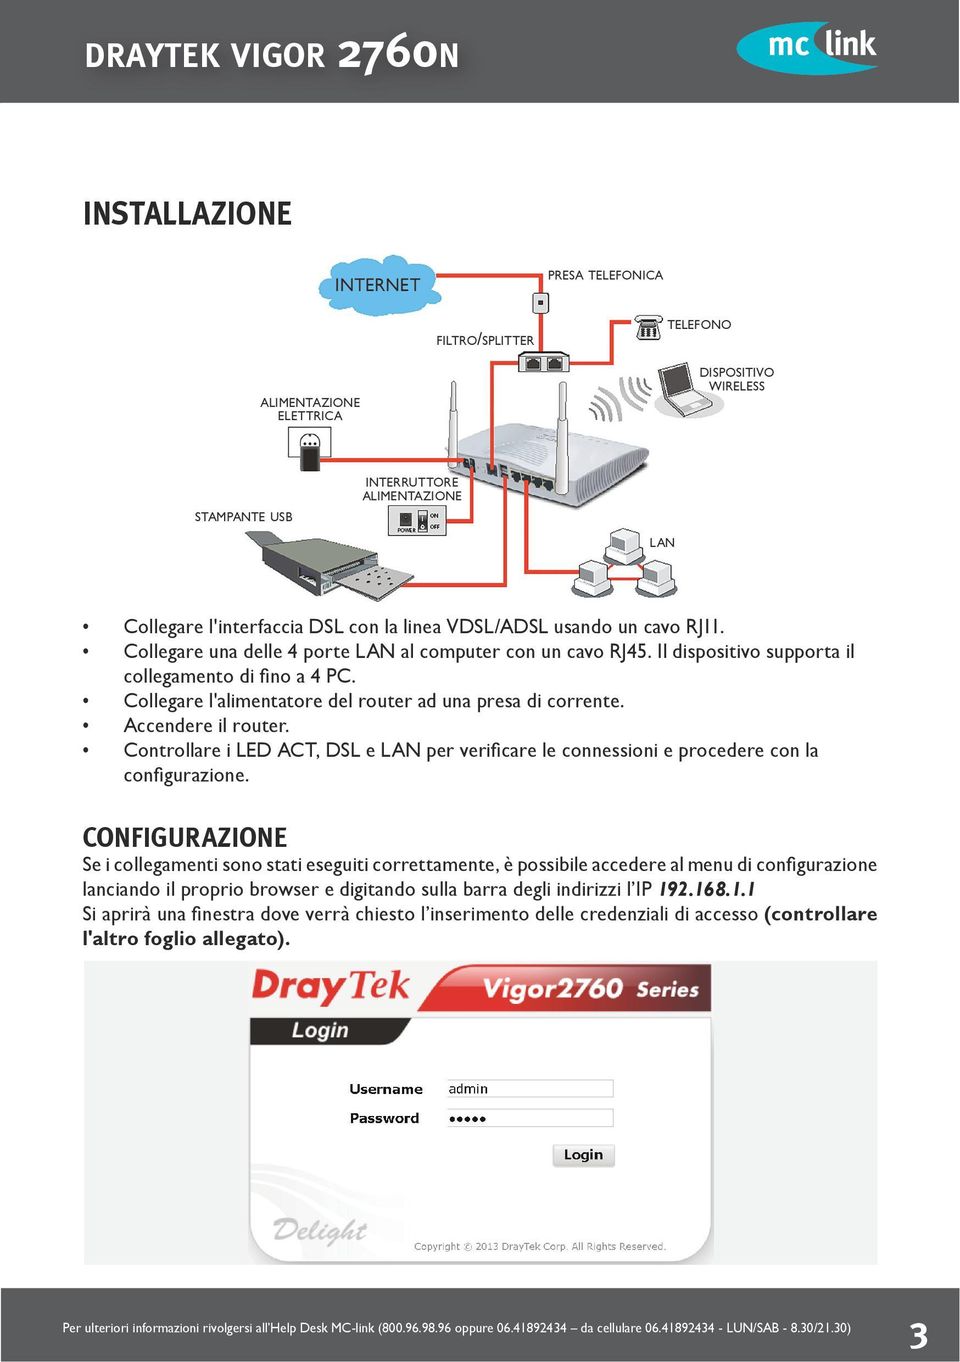 Collegare l'alimentatore del router ad una presa di corrente. Accendere il router. Controllare i LED ACT, DSL e LAN per verificare le connessioni e procedere con la configurazione.